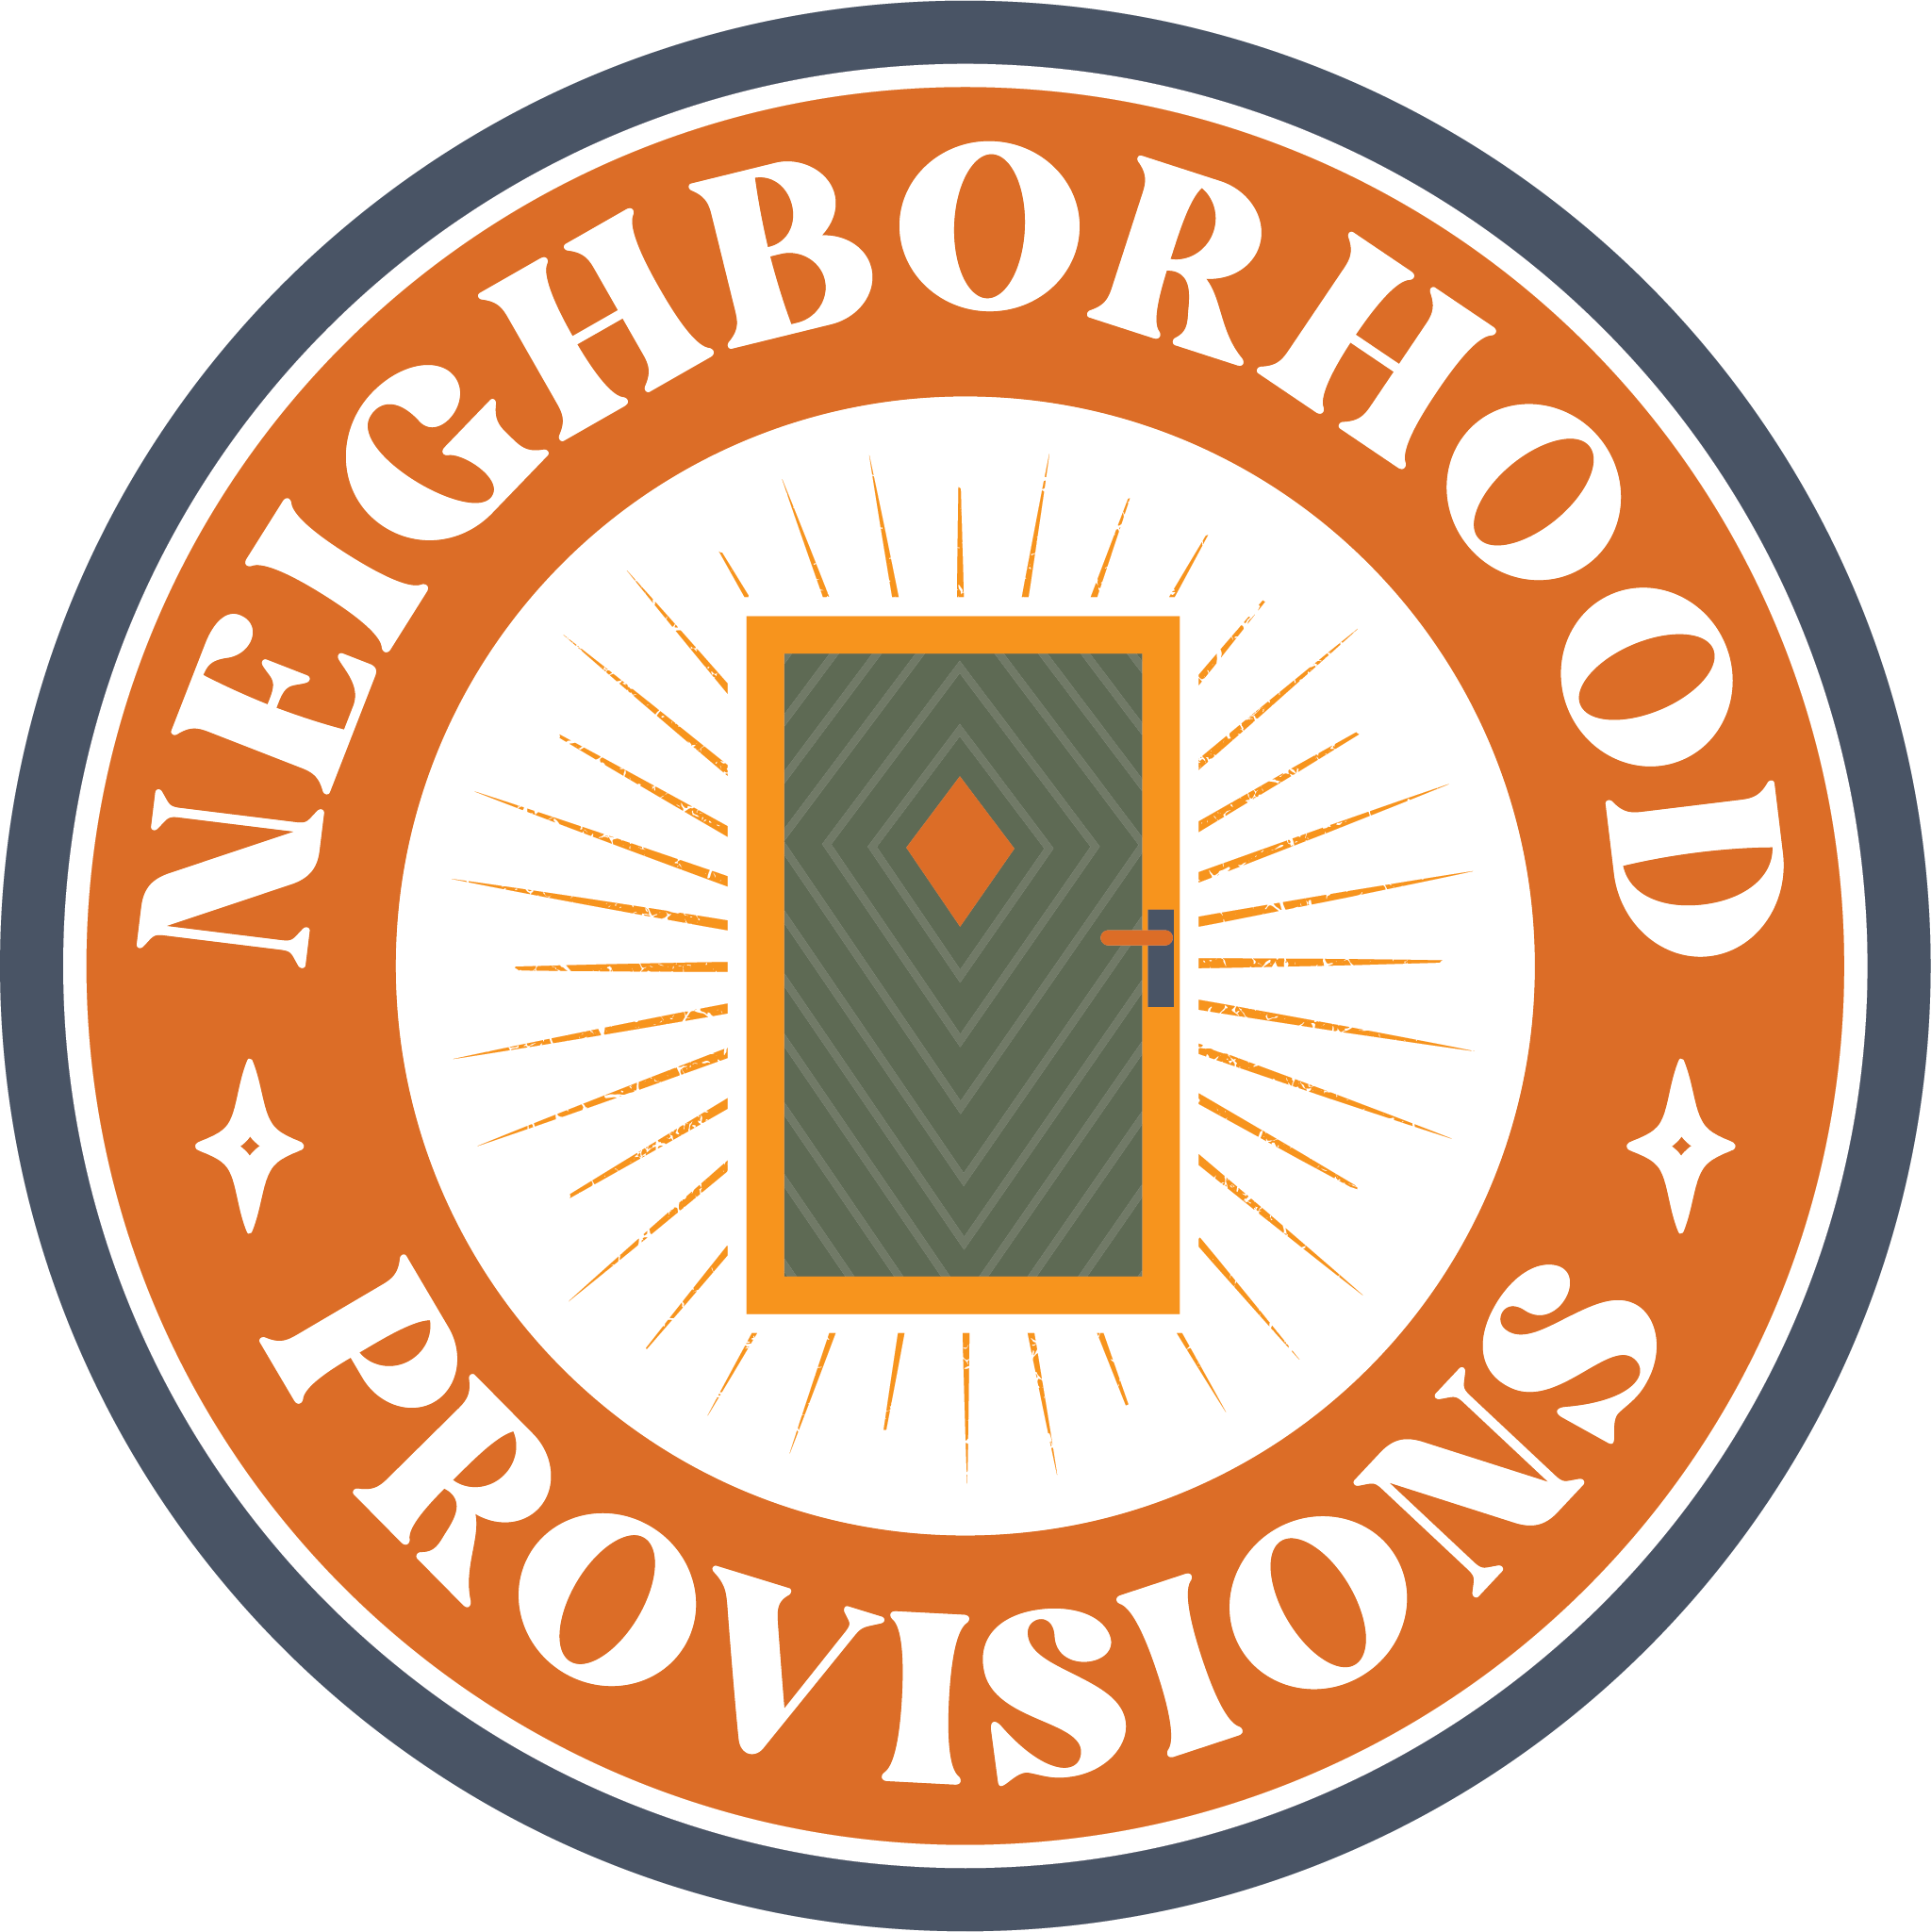 Neighborhood Provisions